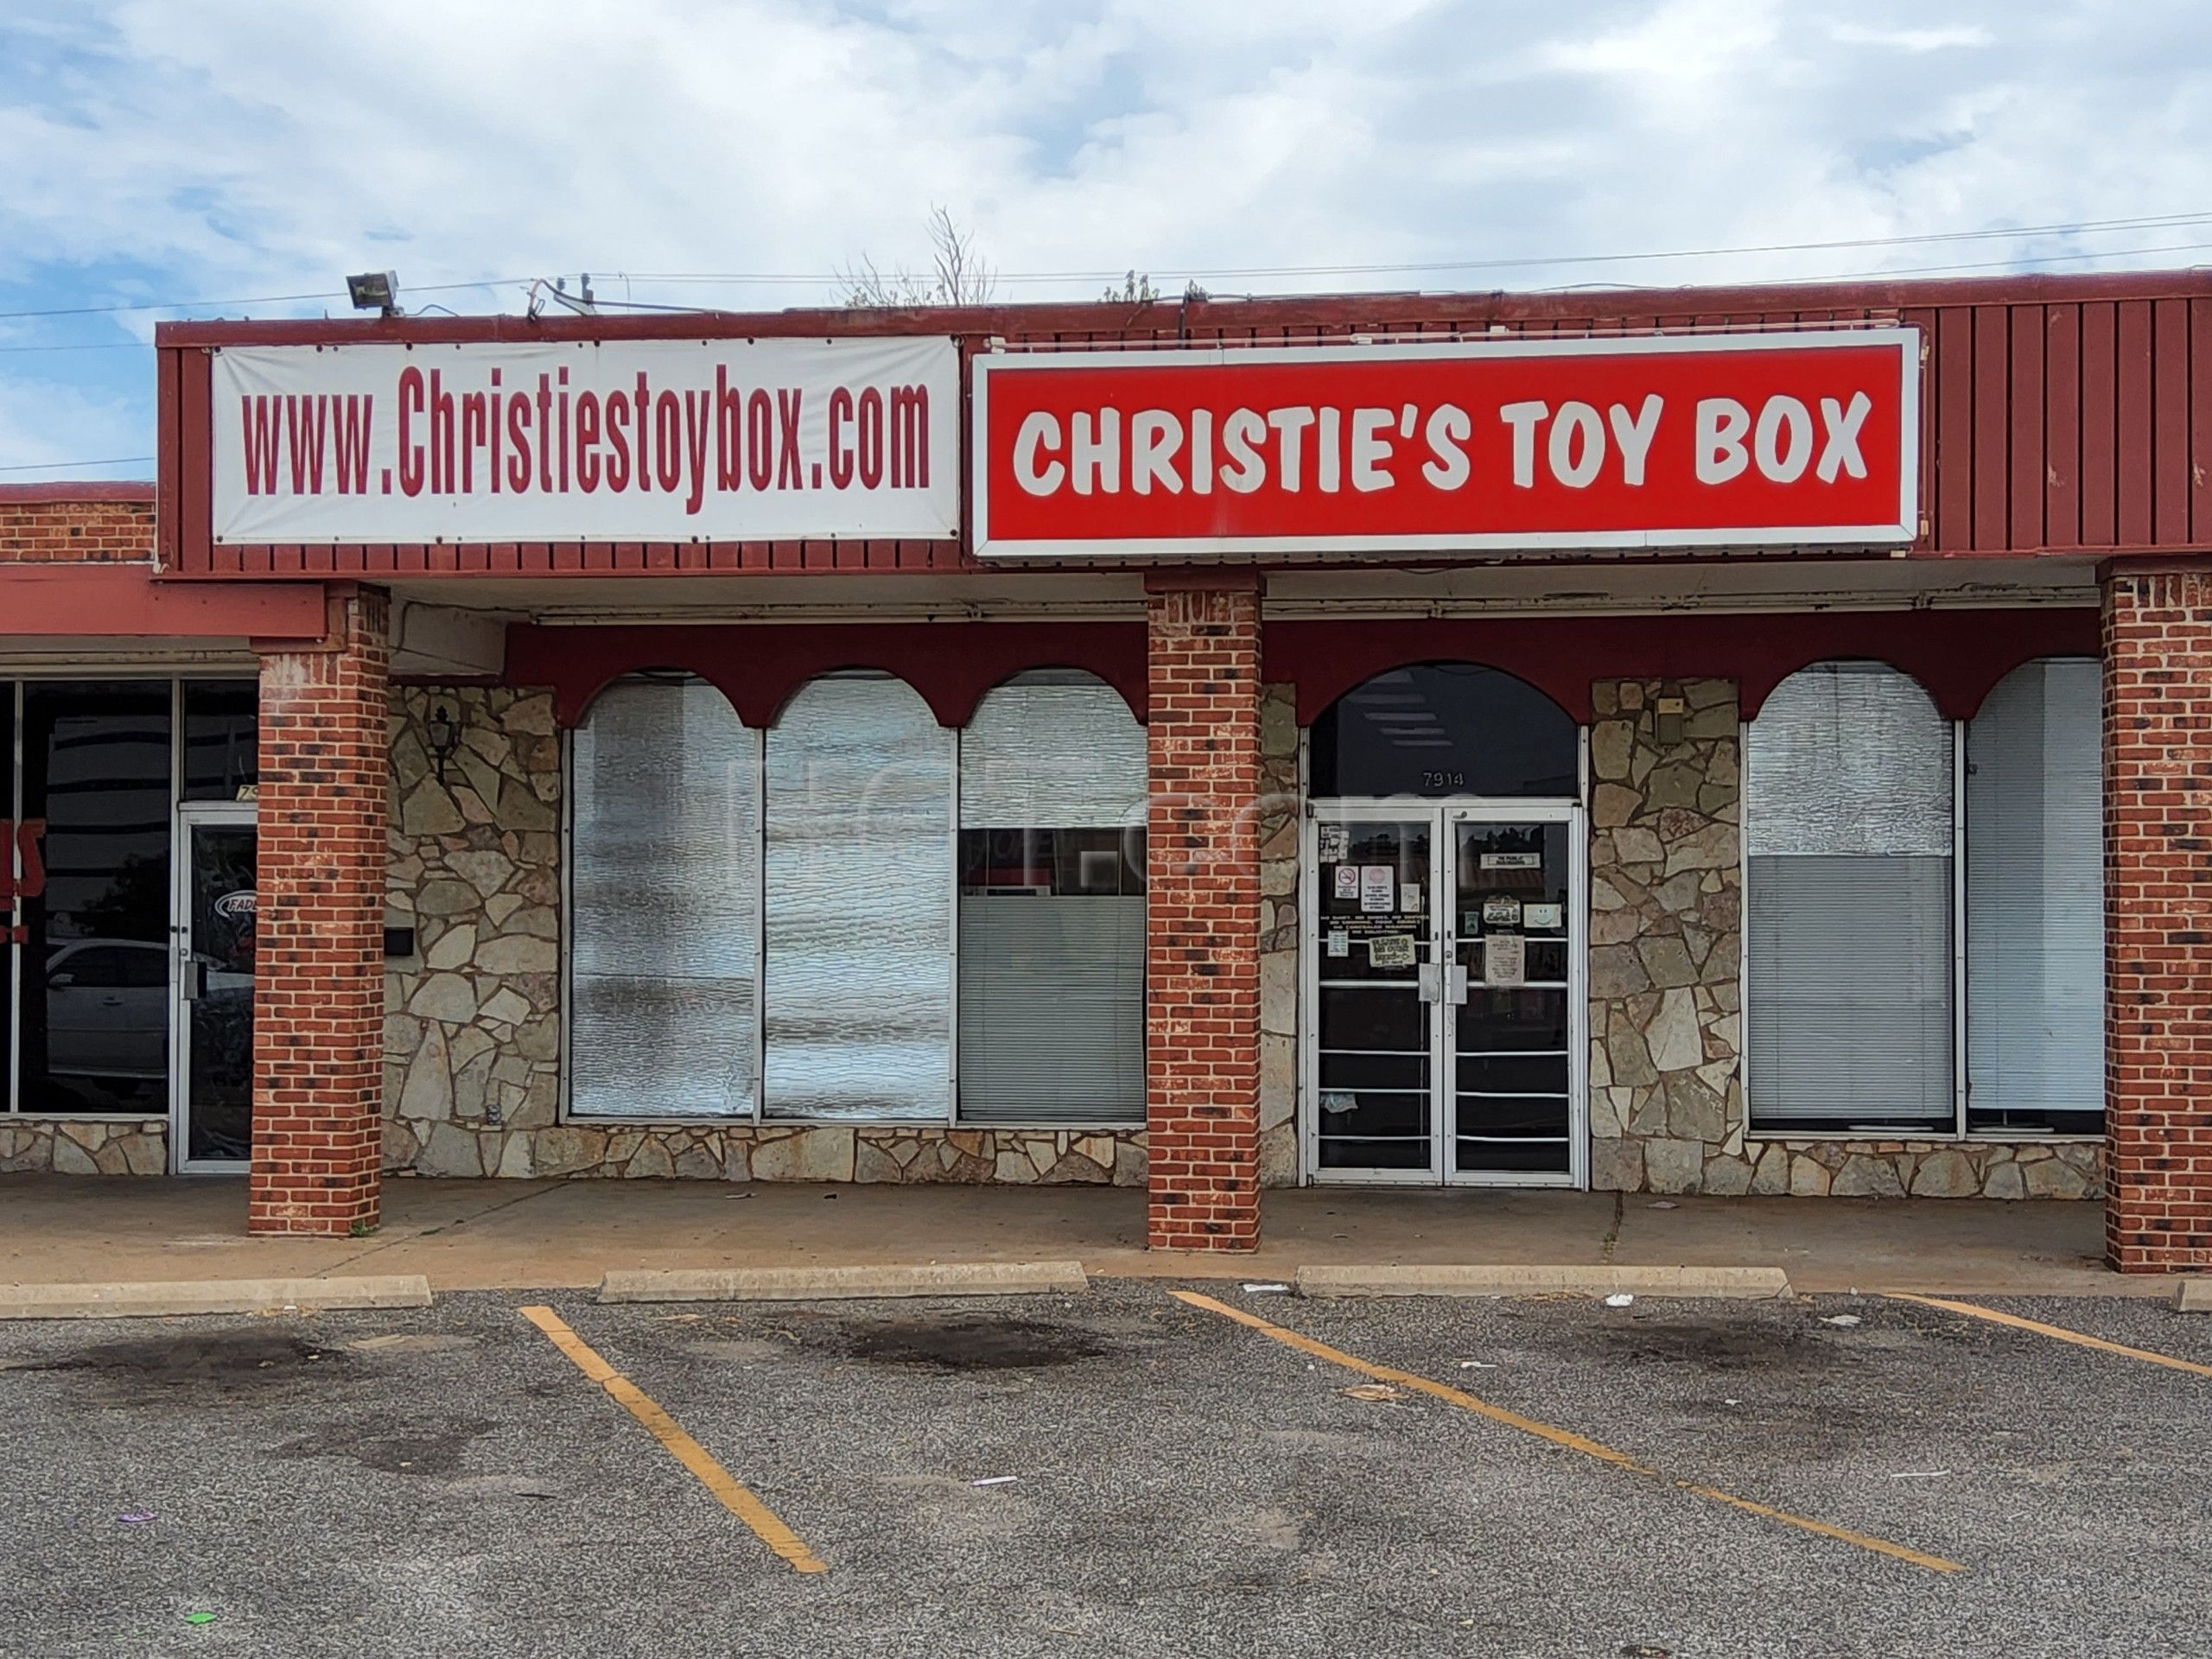 Oklahoma City, Oklahoma Christie's Toy Box